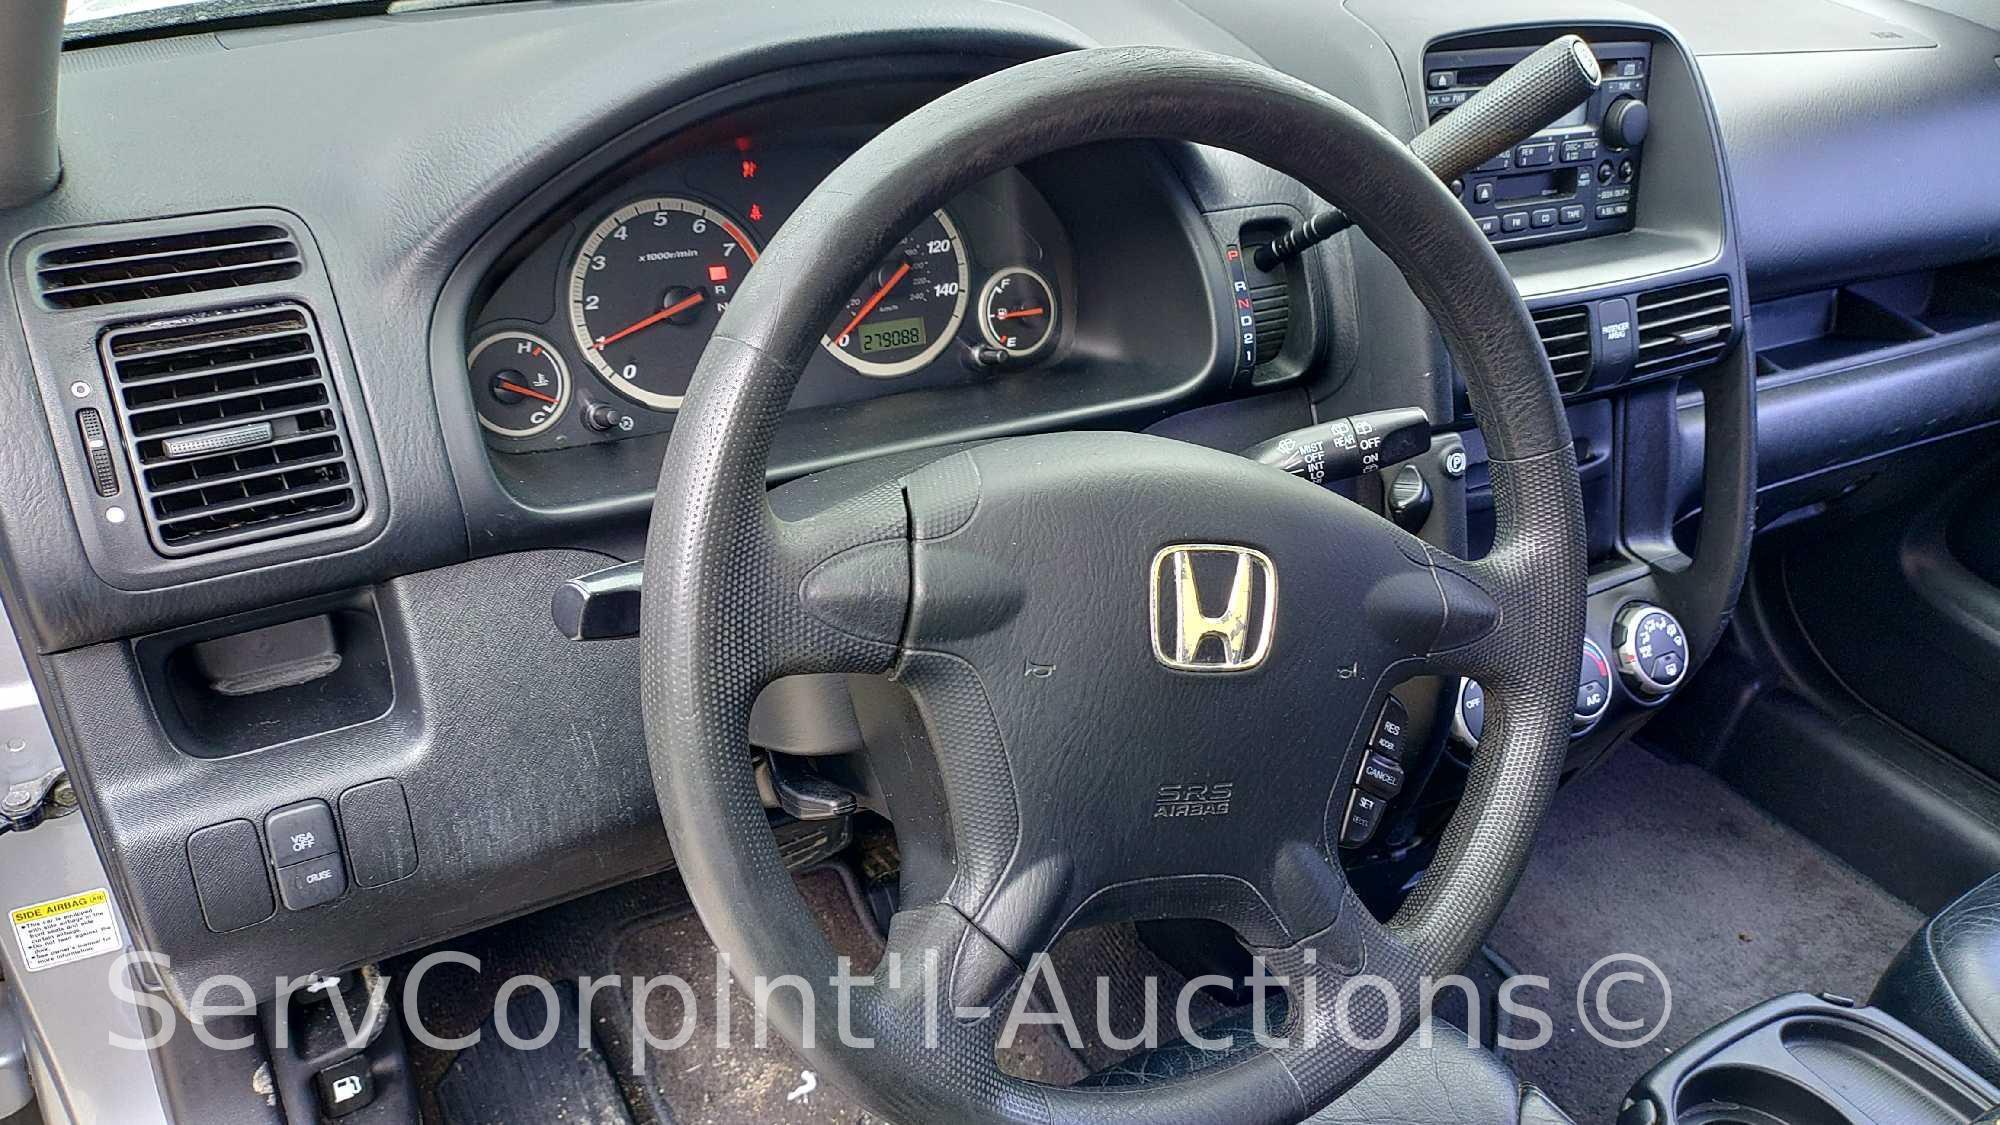 2005 Honda CR-V Multipurpose Vehicle (MPV), VIN # JHLRD68525C013100